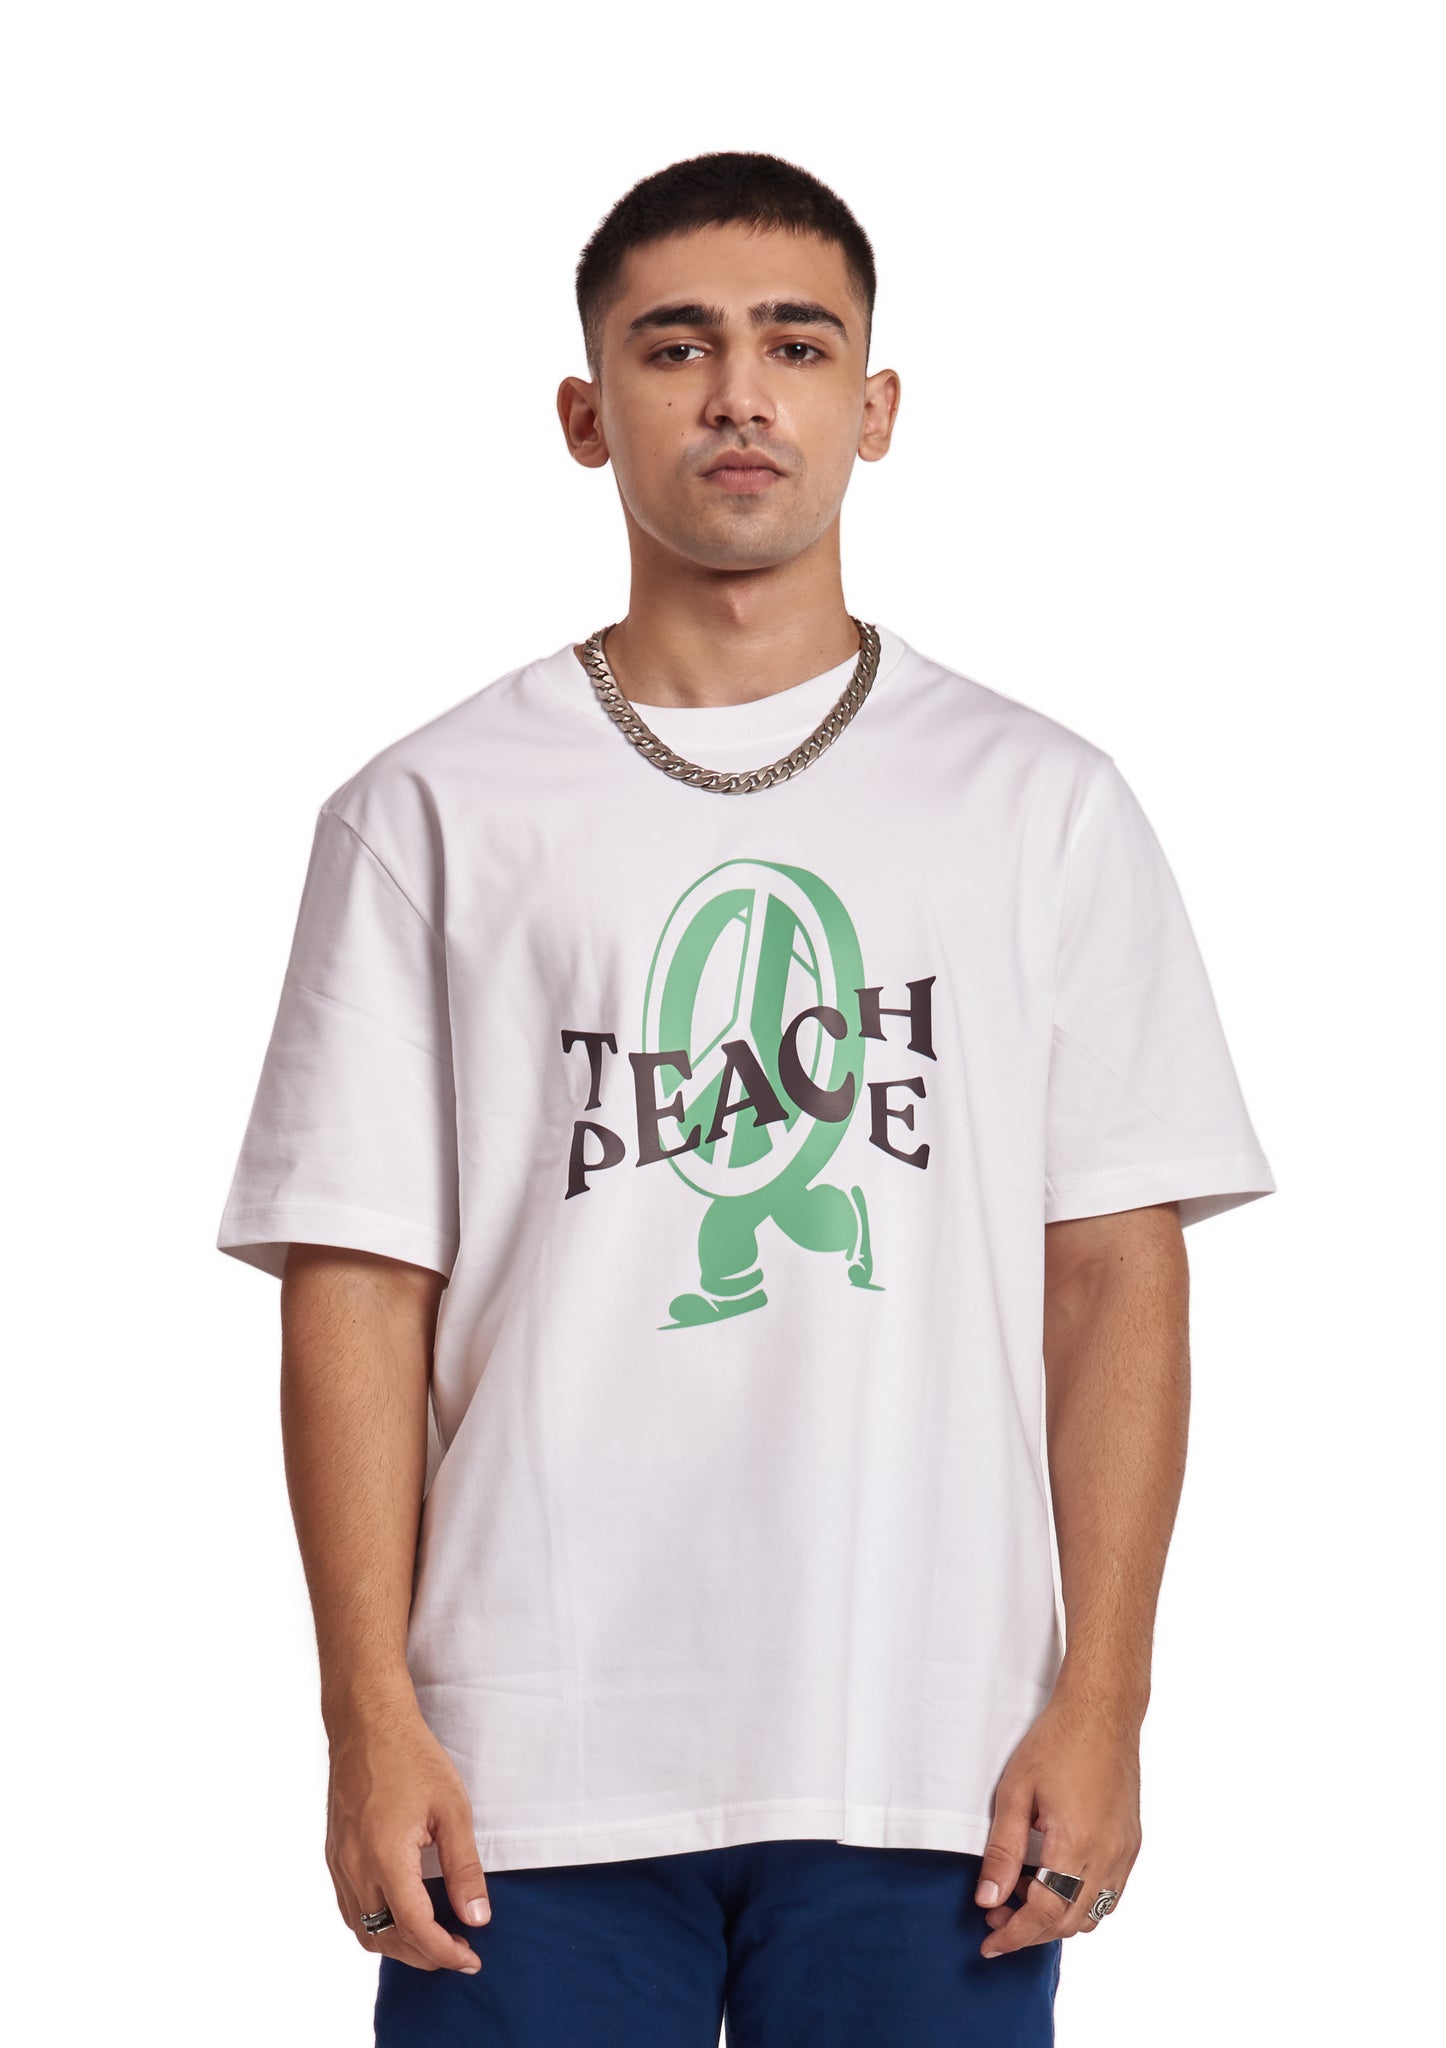 TEACH PEACE T-SHIRT (WHITE)